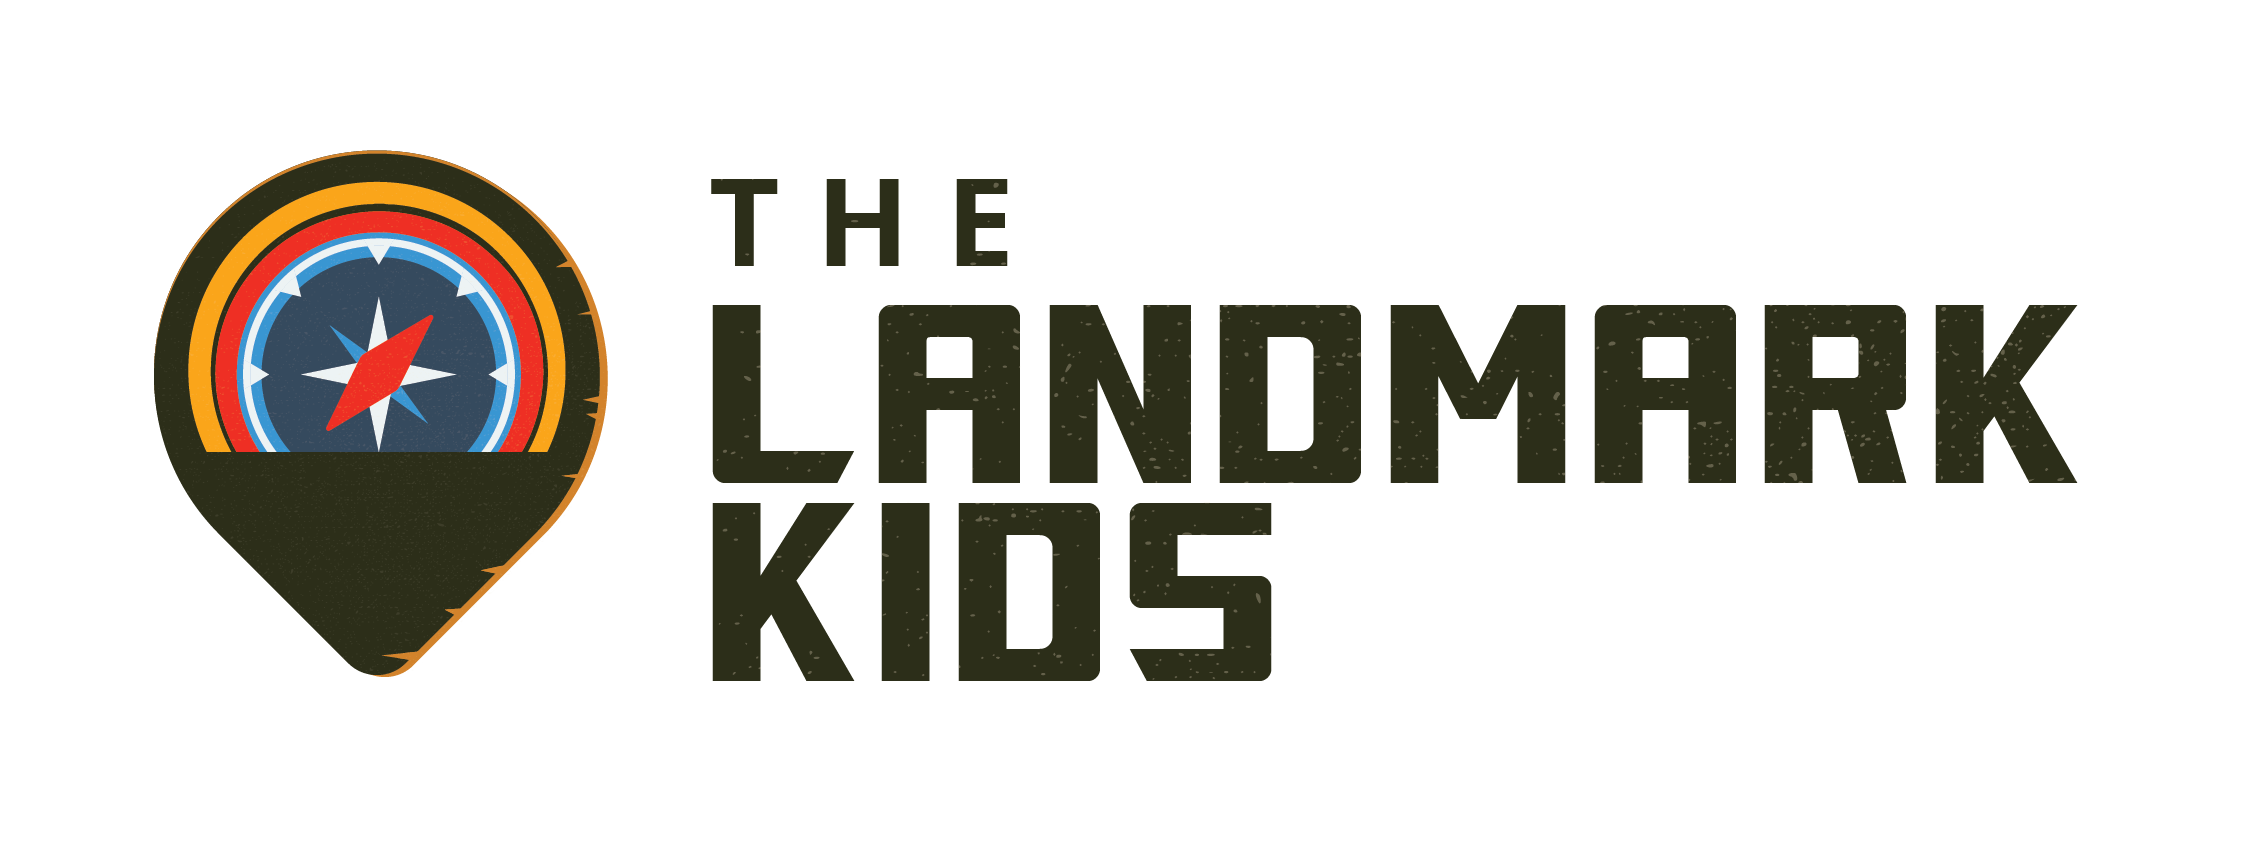 The Landmark Kids logo